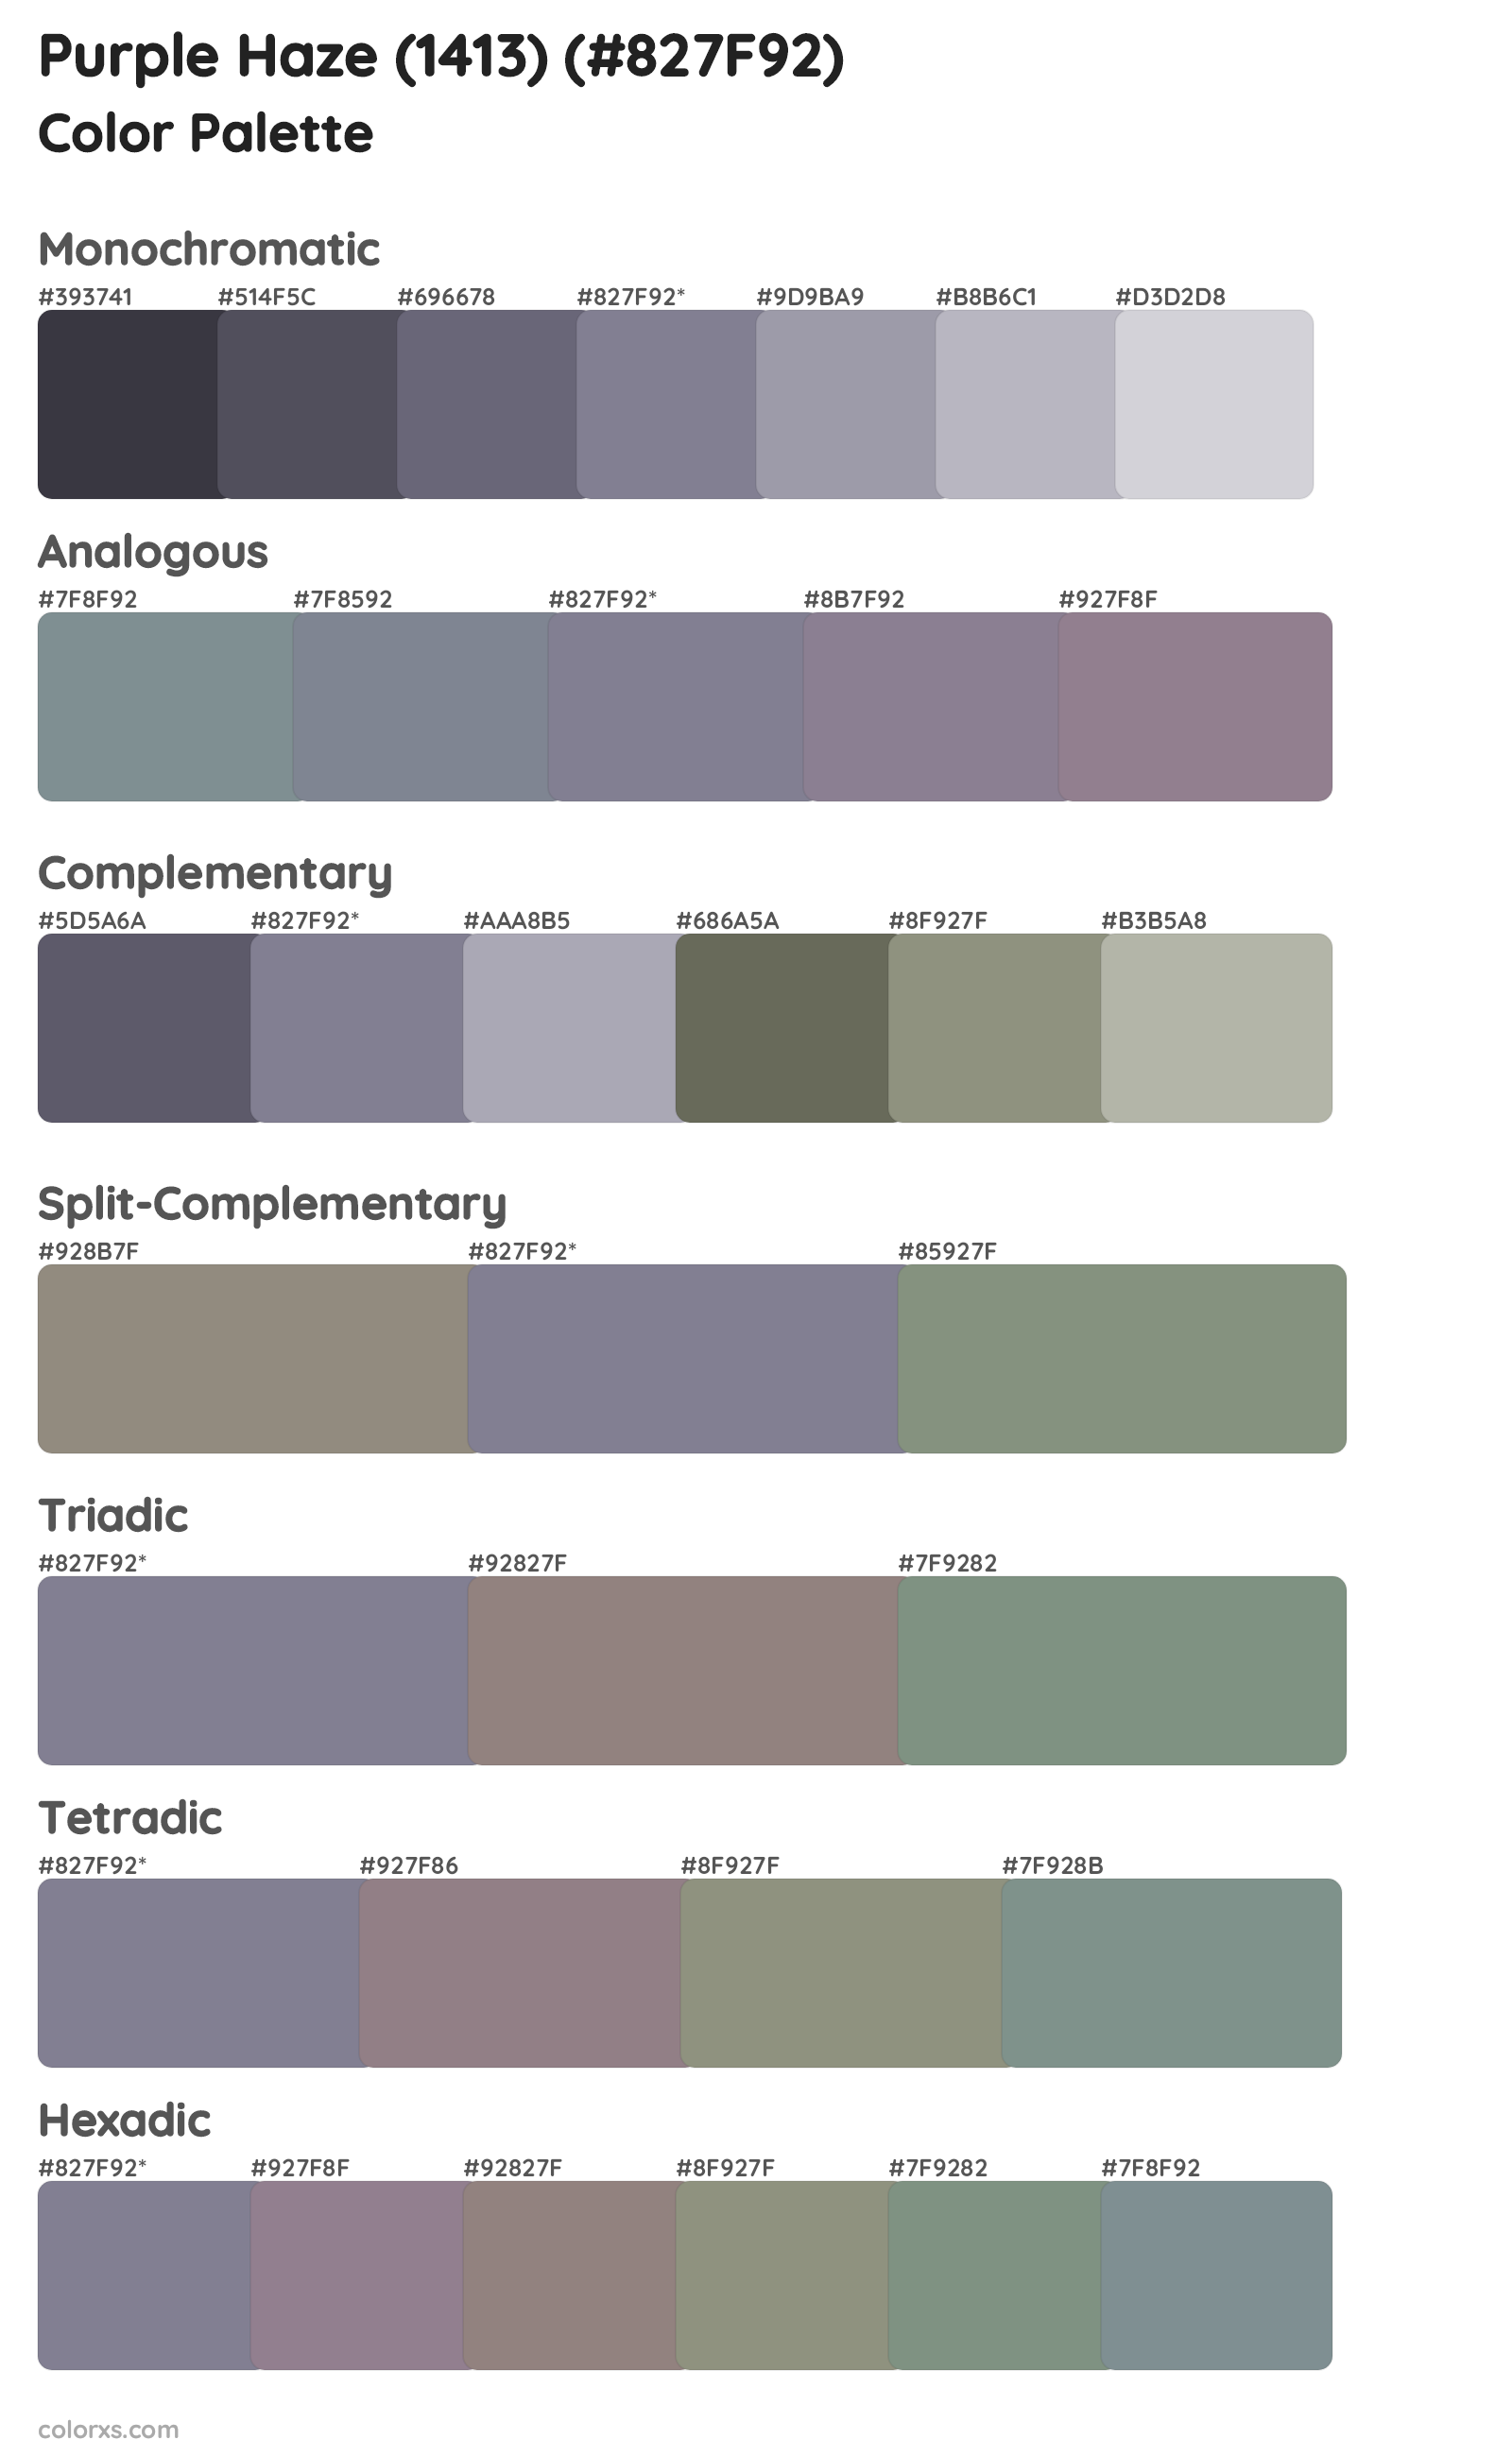 Purple Haze (1413) Color Scheme Palettes